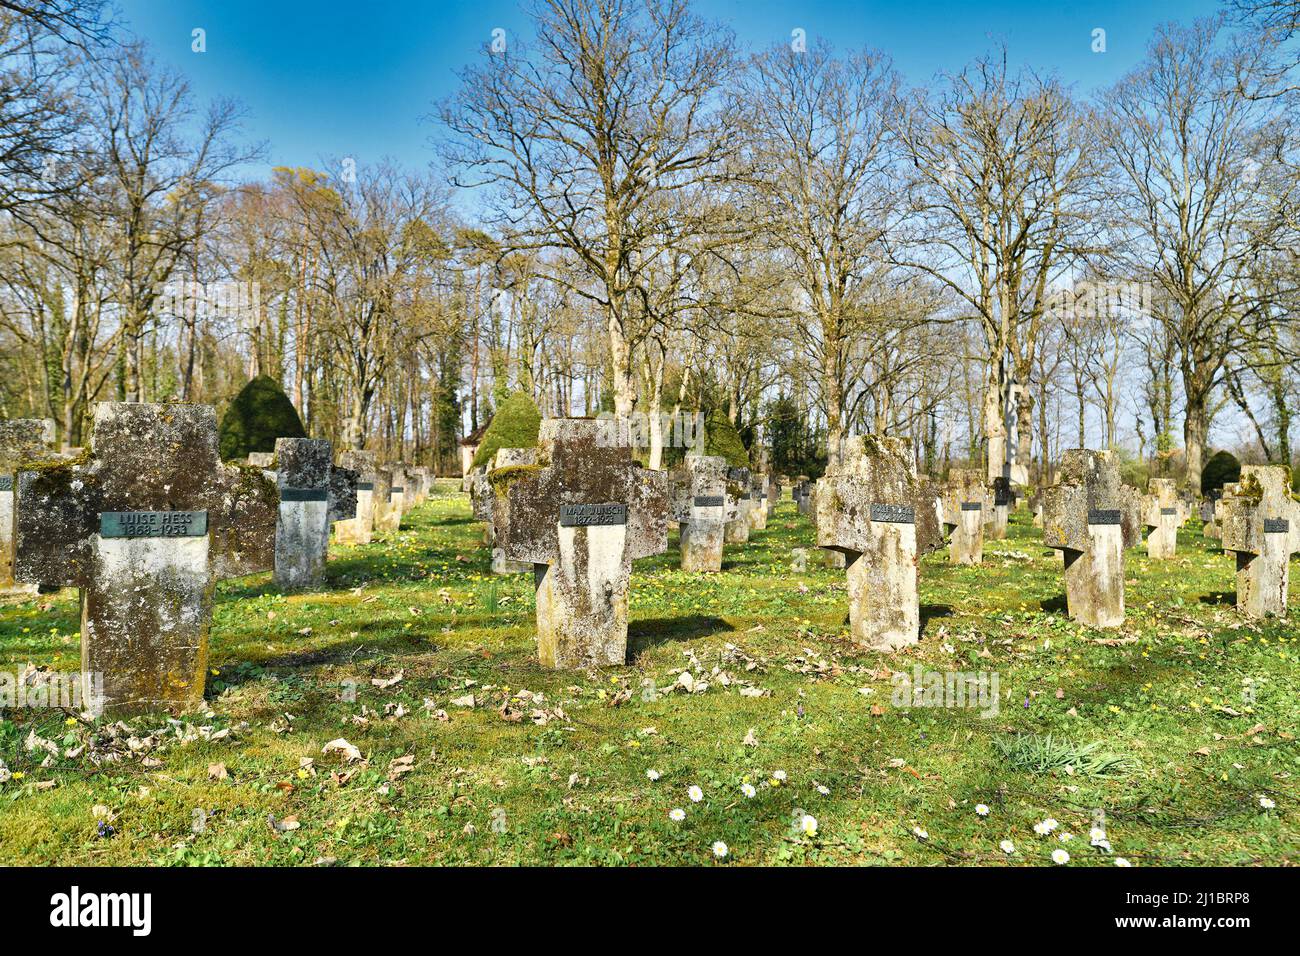 Wiesloch, Deutschland - März 2022: Kreuzförmige Grabsteine auf dem Friedhof für Menschen, die im psychiatrischen Zentrum Nordba starben Stockfoto